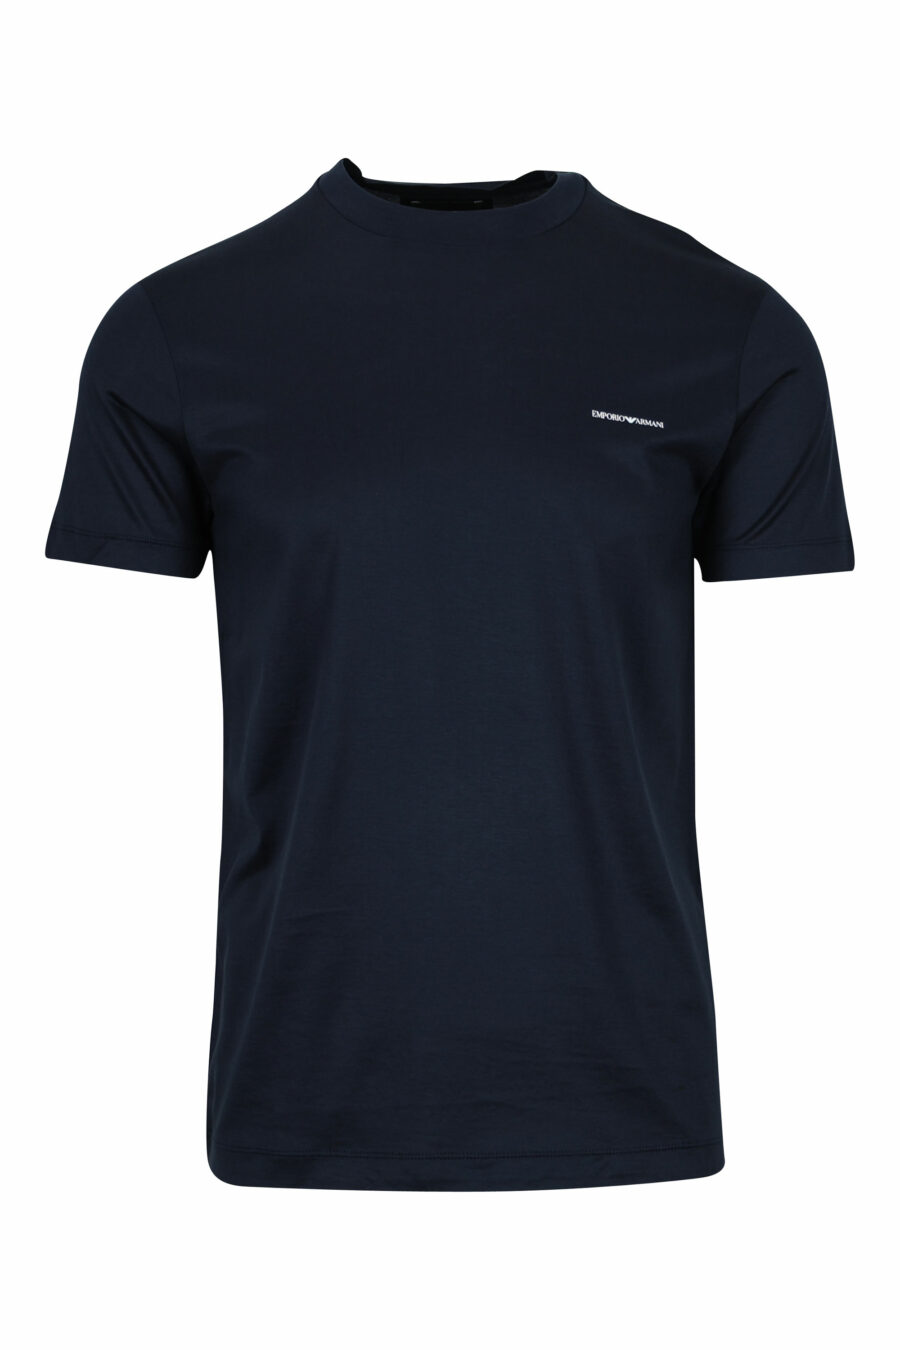 T-shirt bleu foncé avec minilogue "emporio" - 8059516408352 1